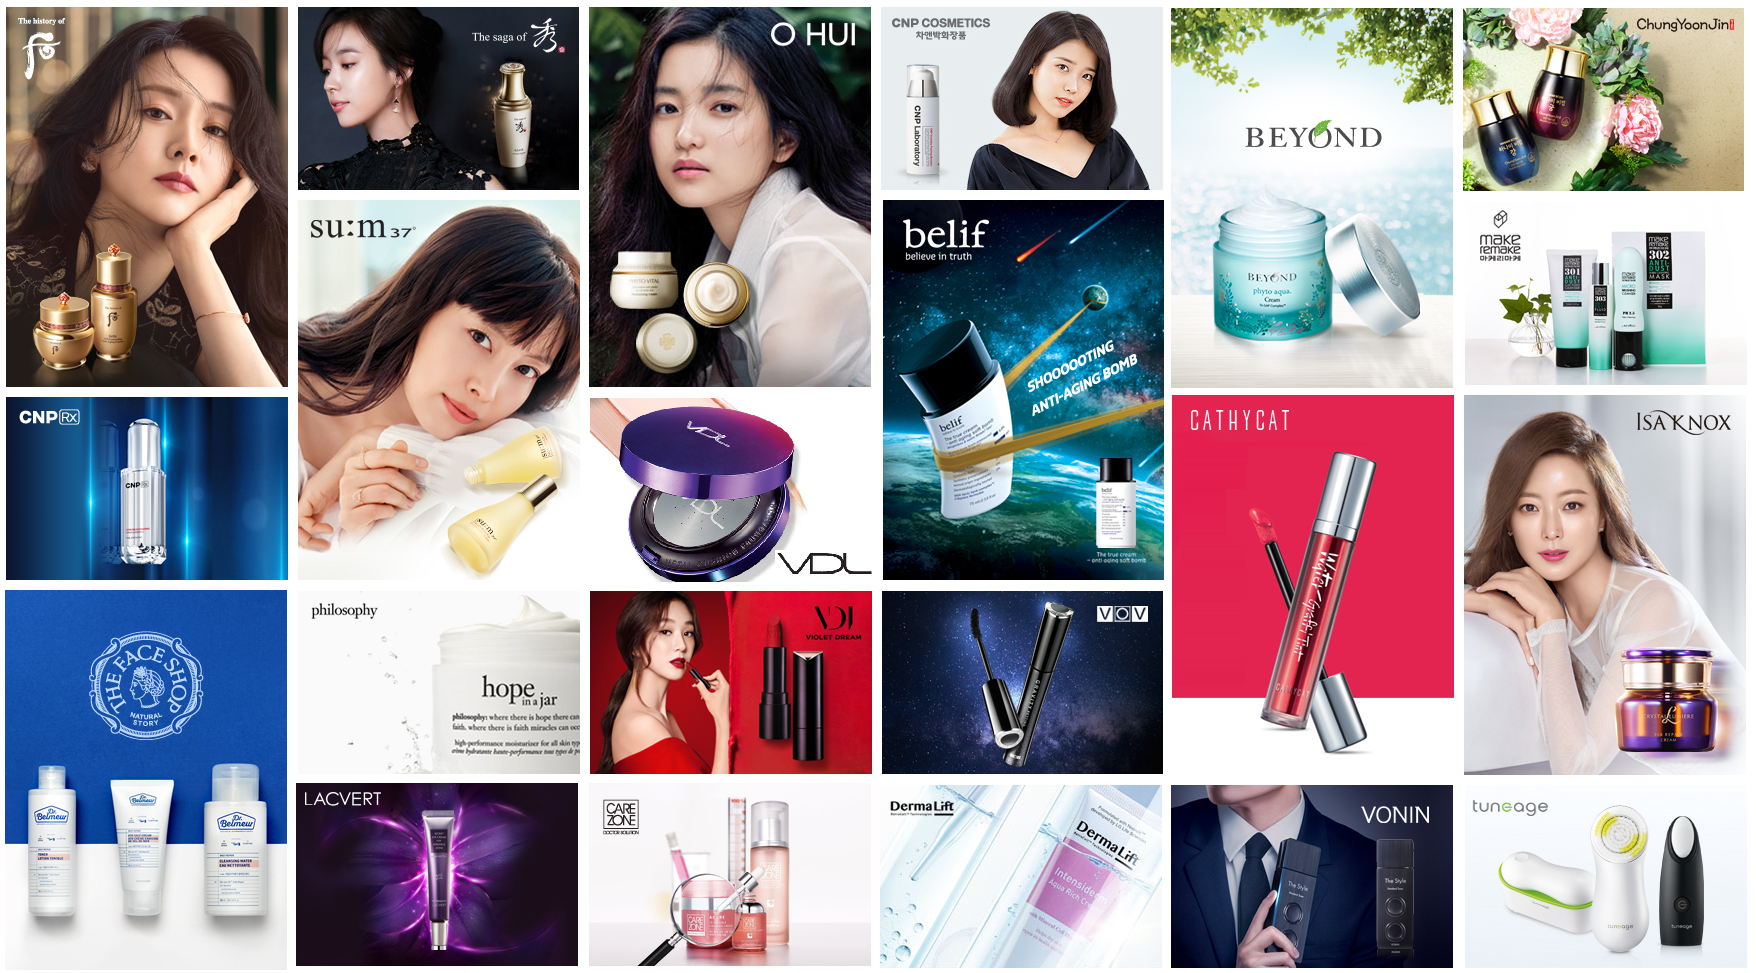 Корейская косметика - какой бренд лучший